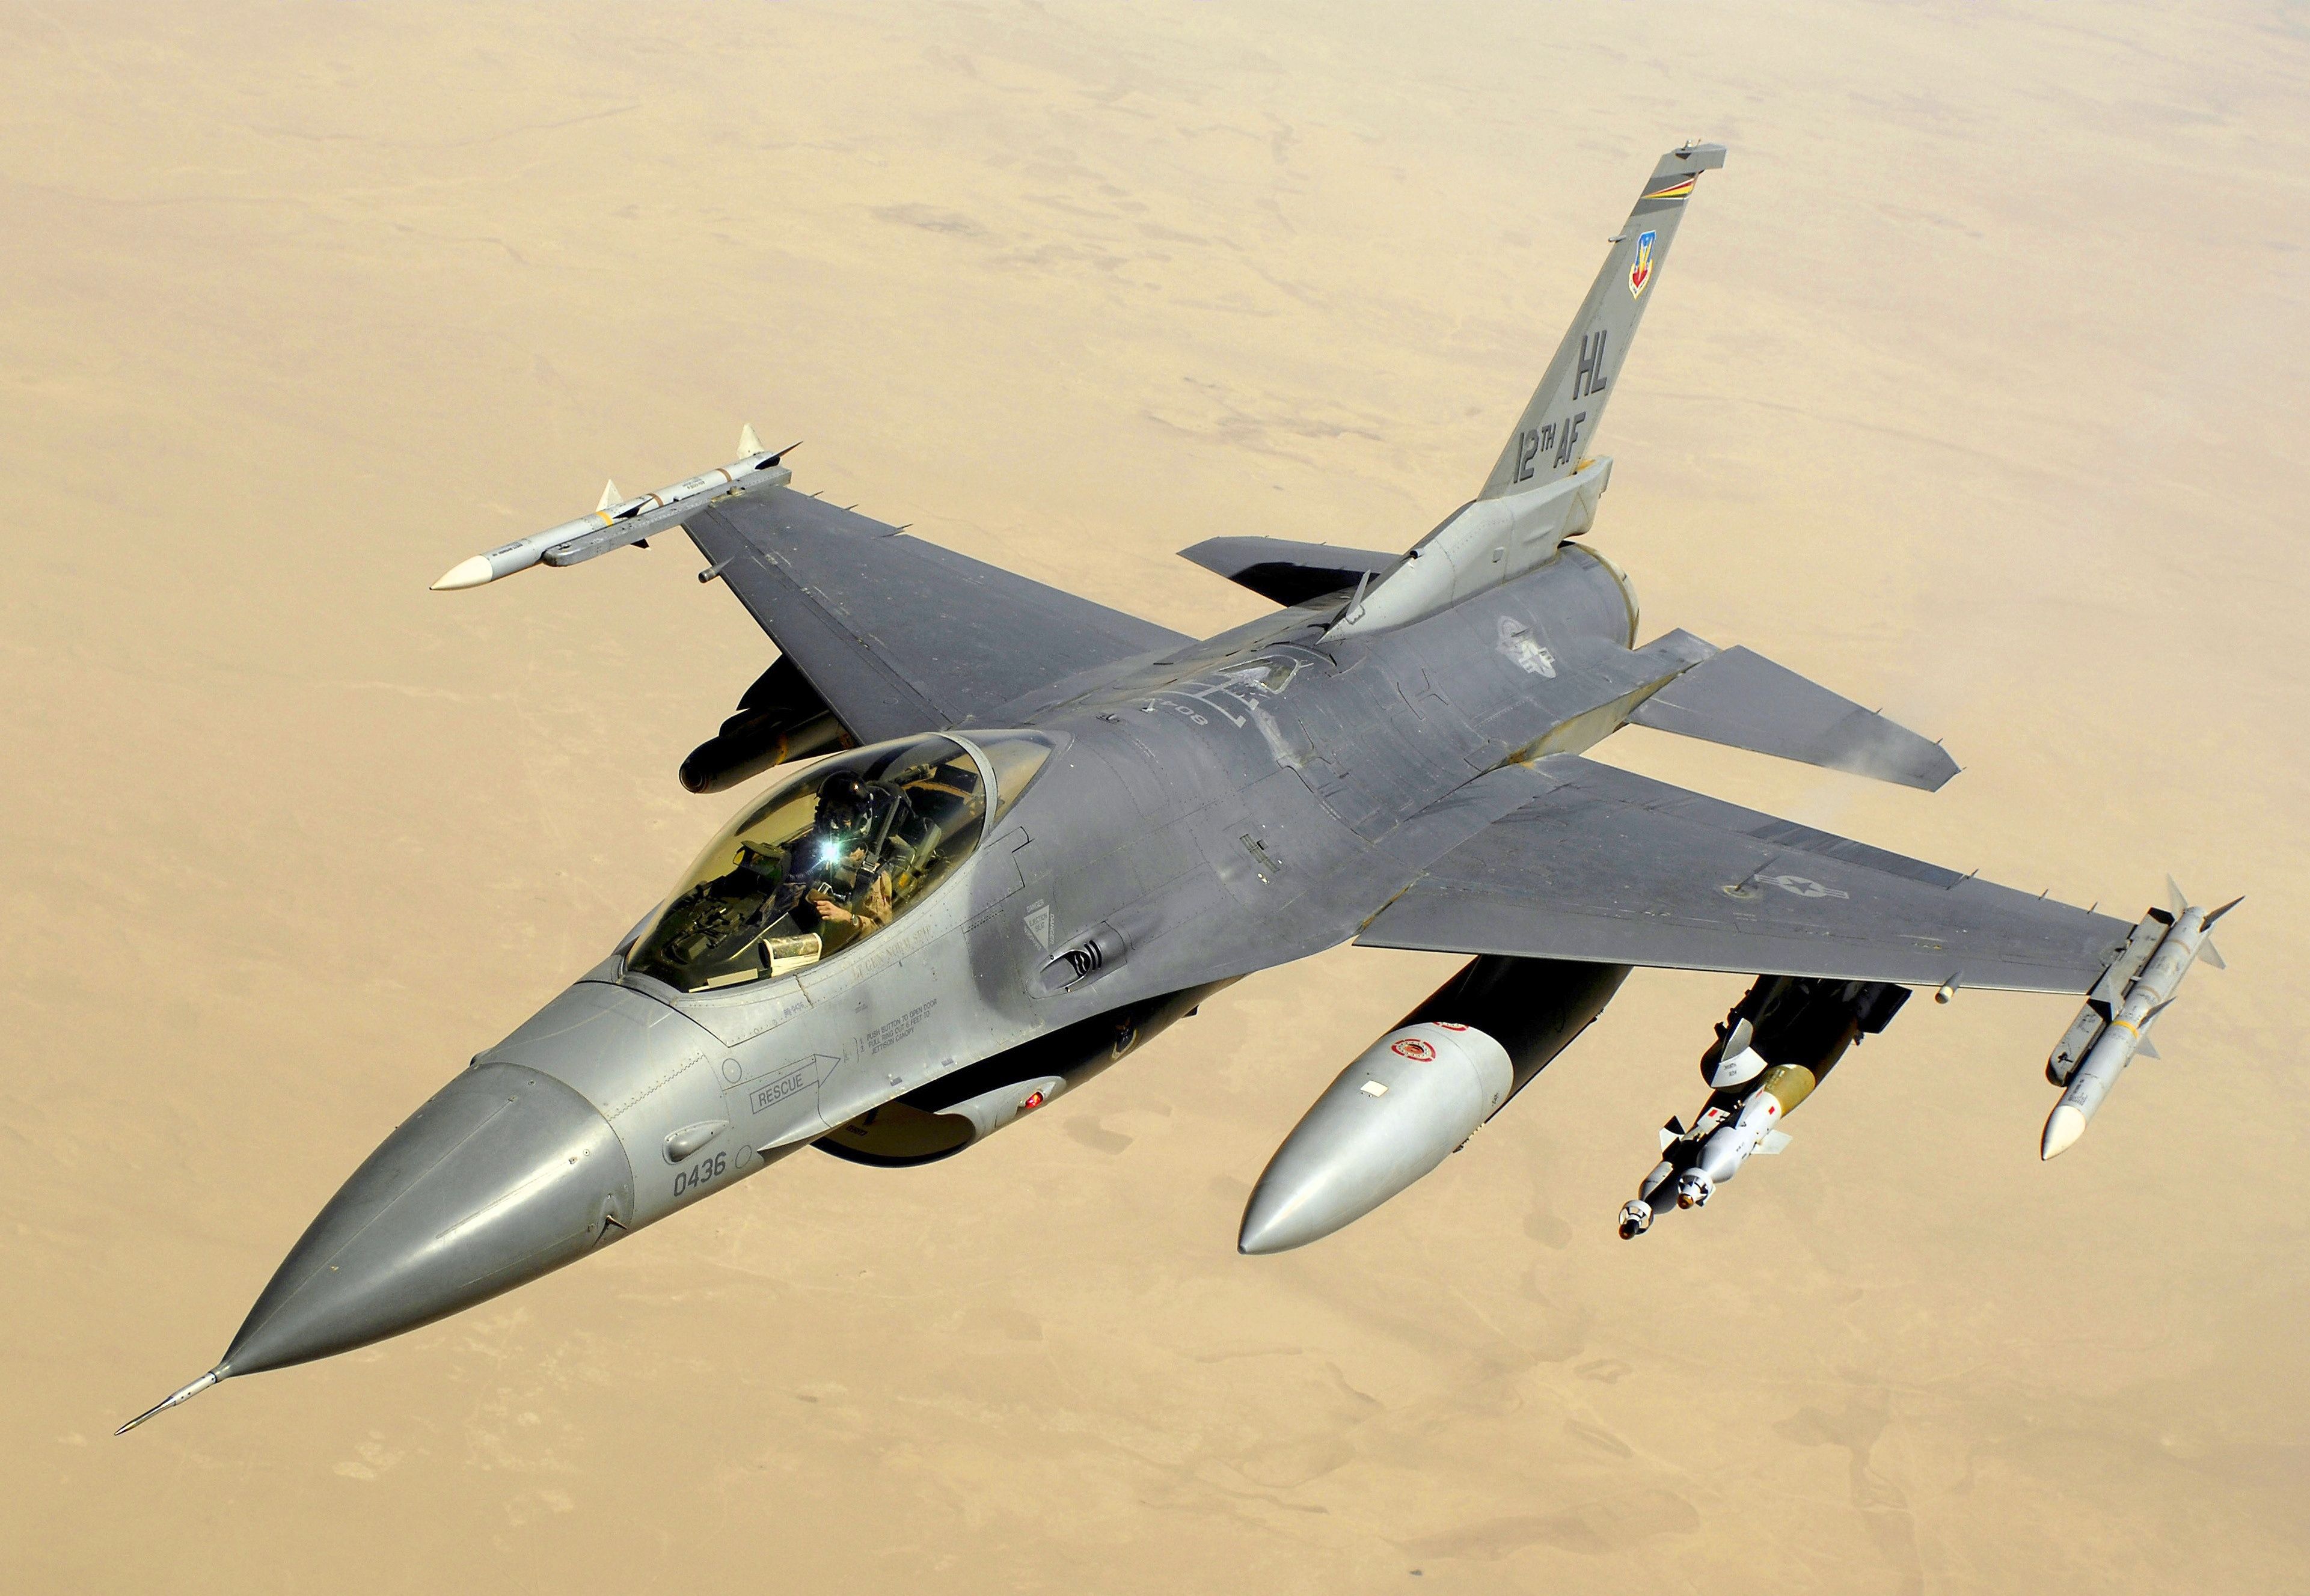 An F-16 flying over desert terrain.